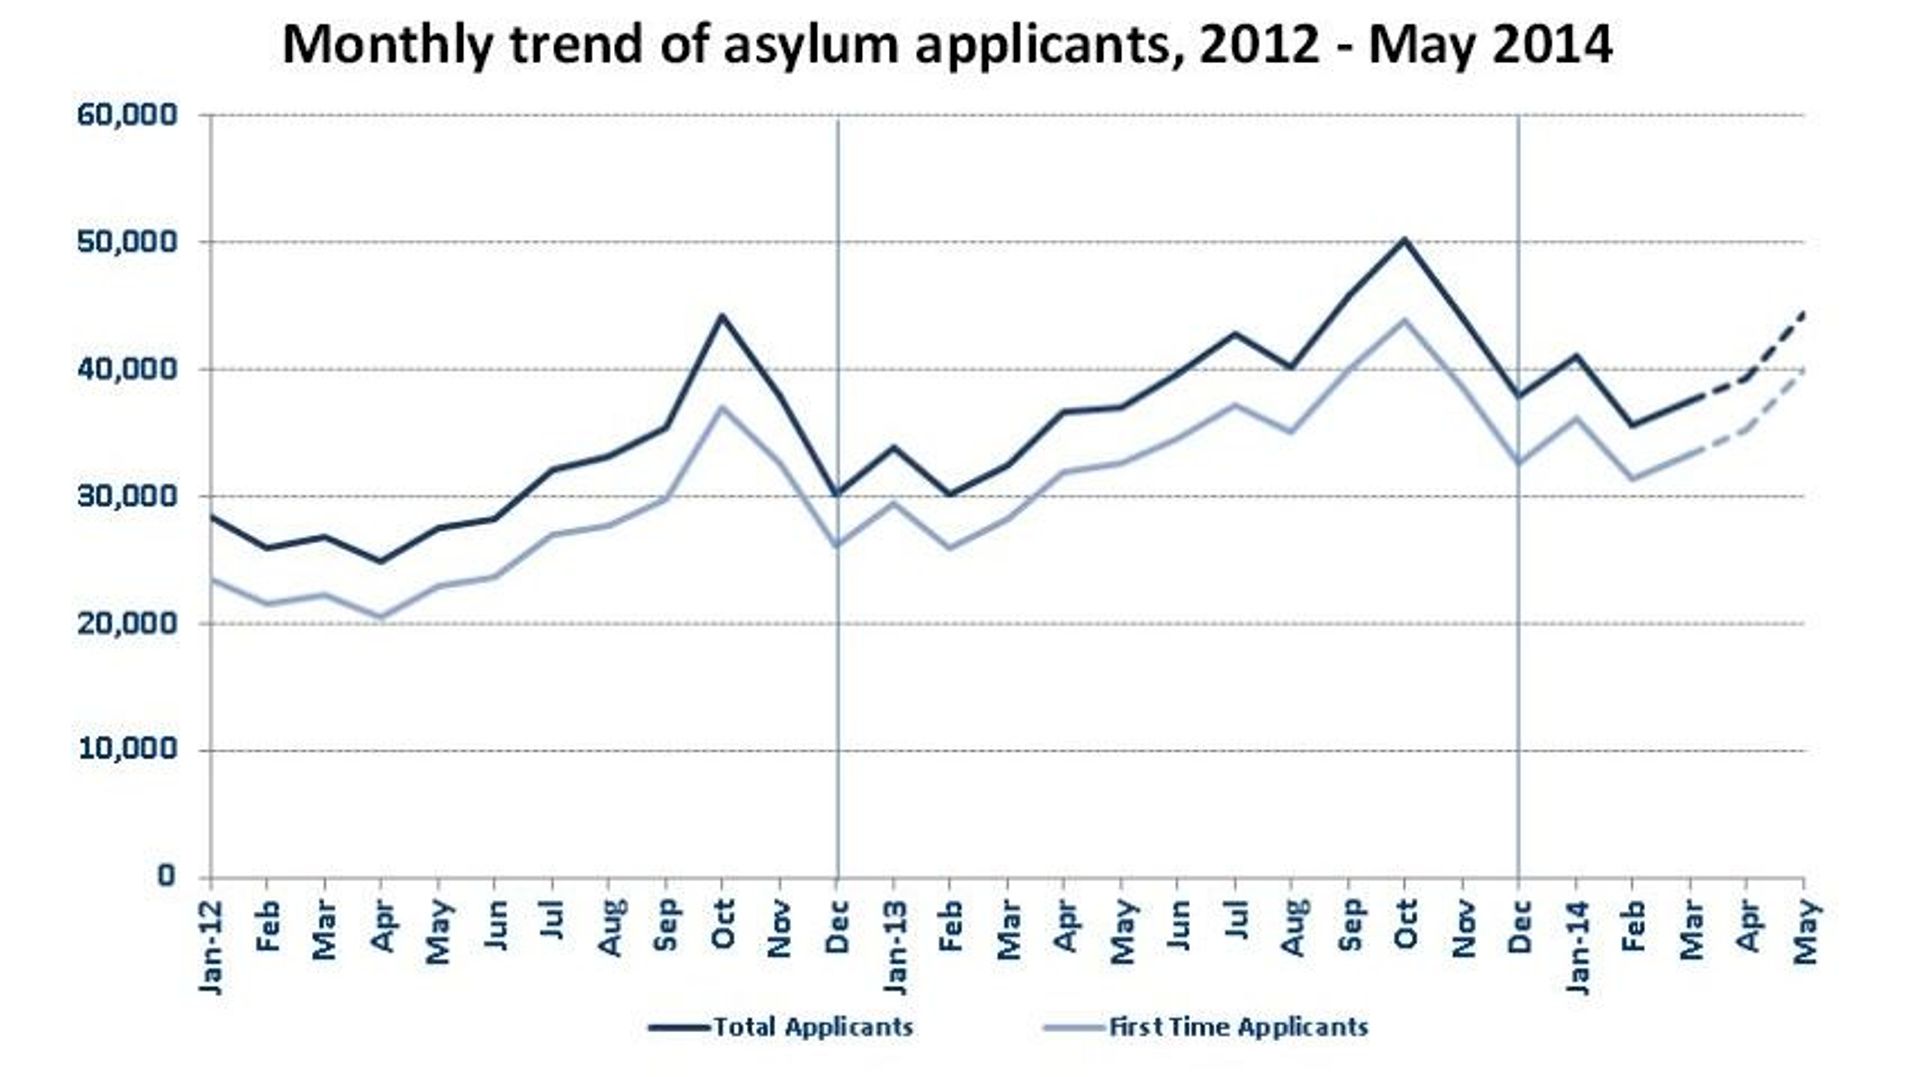 Tendances de l'immigration dans l'Union européenne - En bleu foncé, le nombre total de demandeurs d'asile; en bleu clair les immigrés qui ont introduit pour la toute première fois une demande d'asile